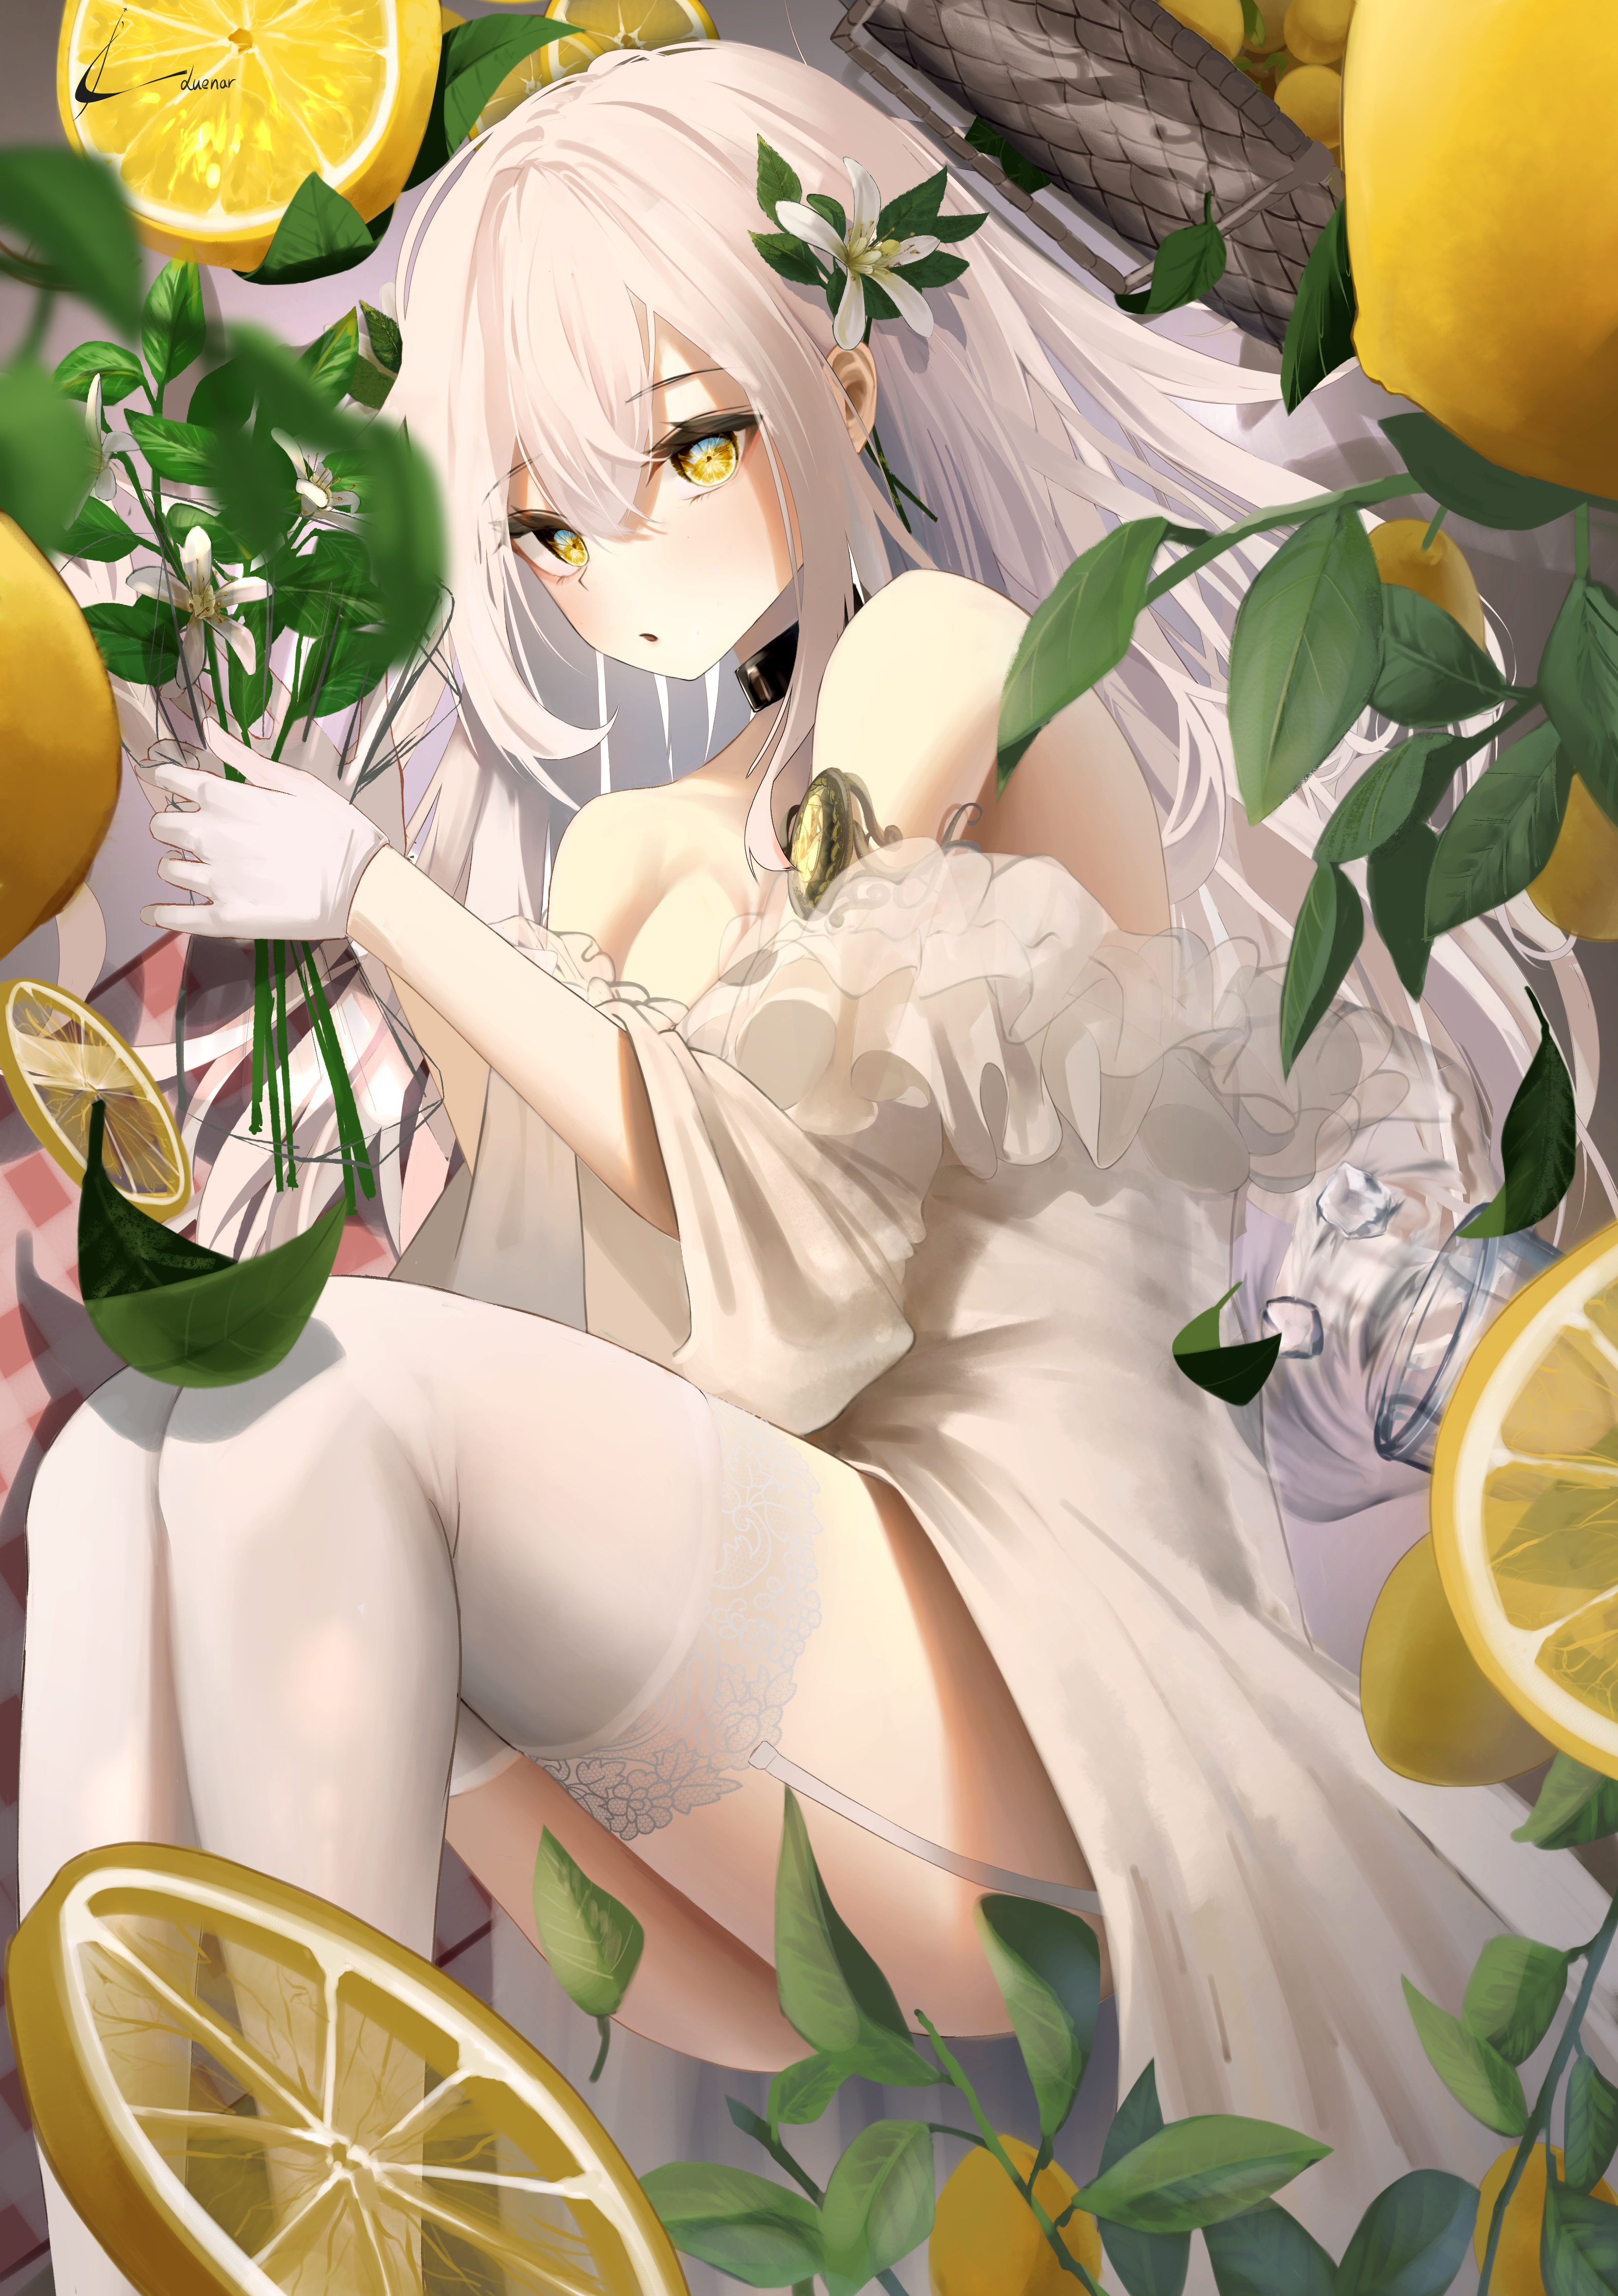 Anime Anime Girls Vertical Choker Lemons Leaves Gloves Flower In Hair 3148x4467